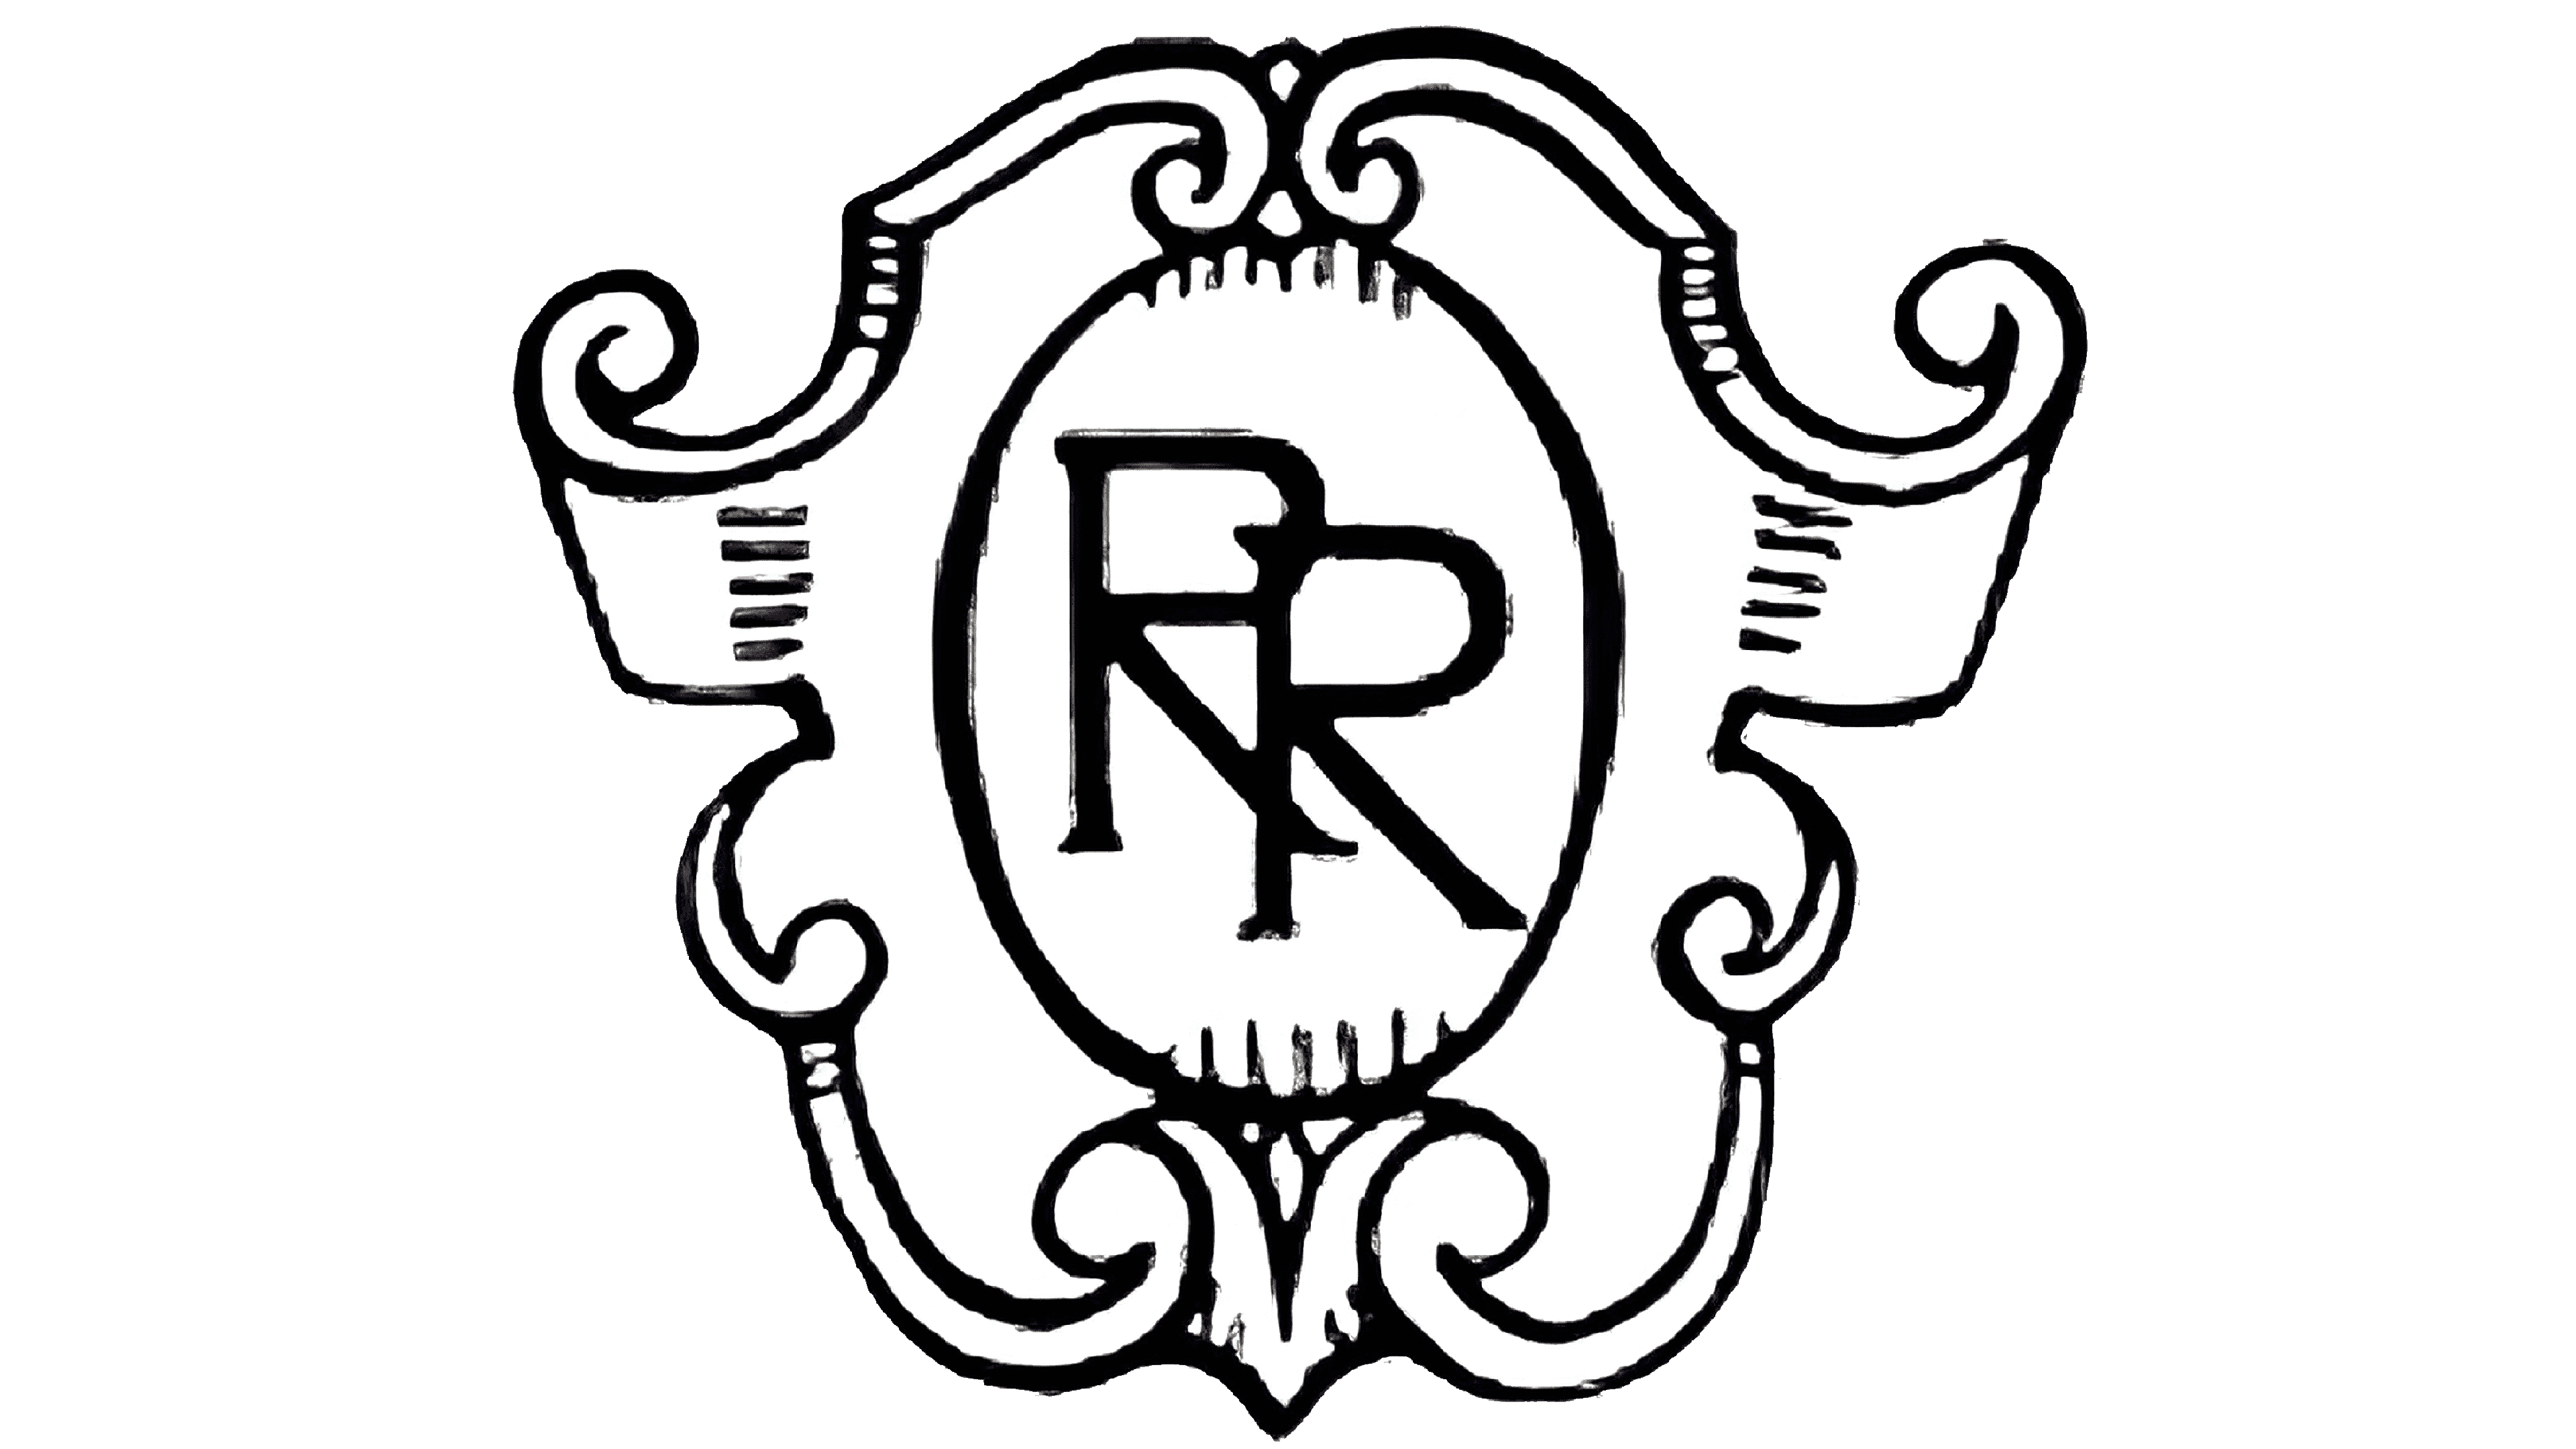 Logo Rolls Royce làm bằng gì bao nhiêu tiền